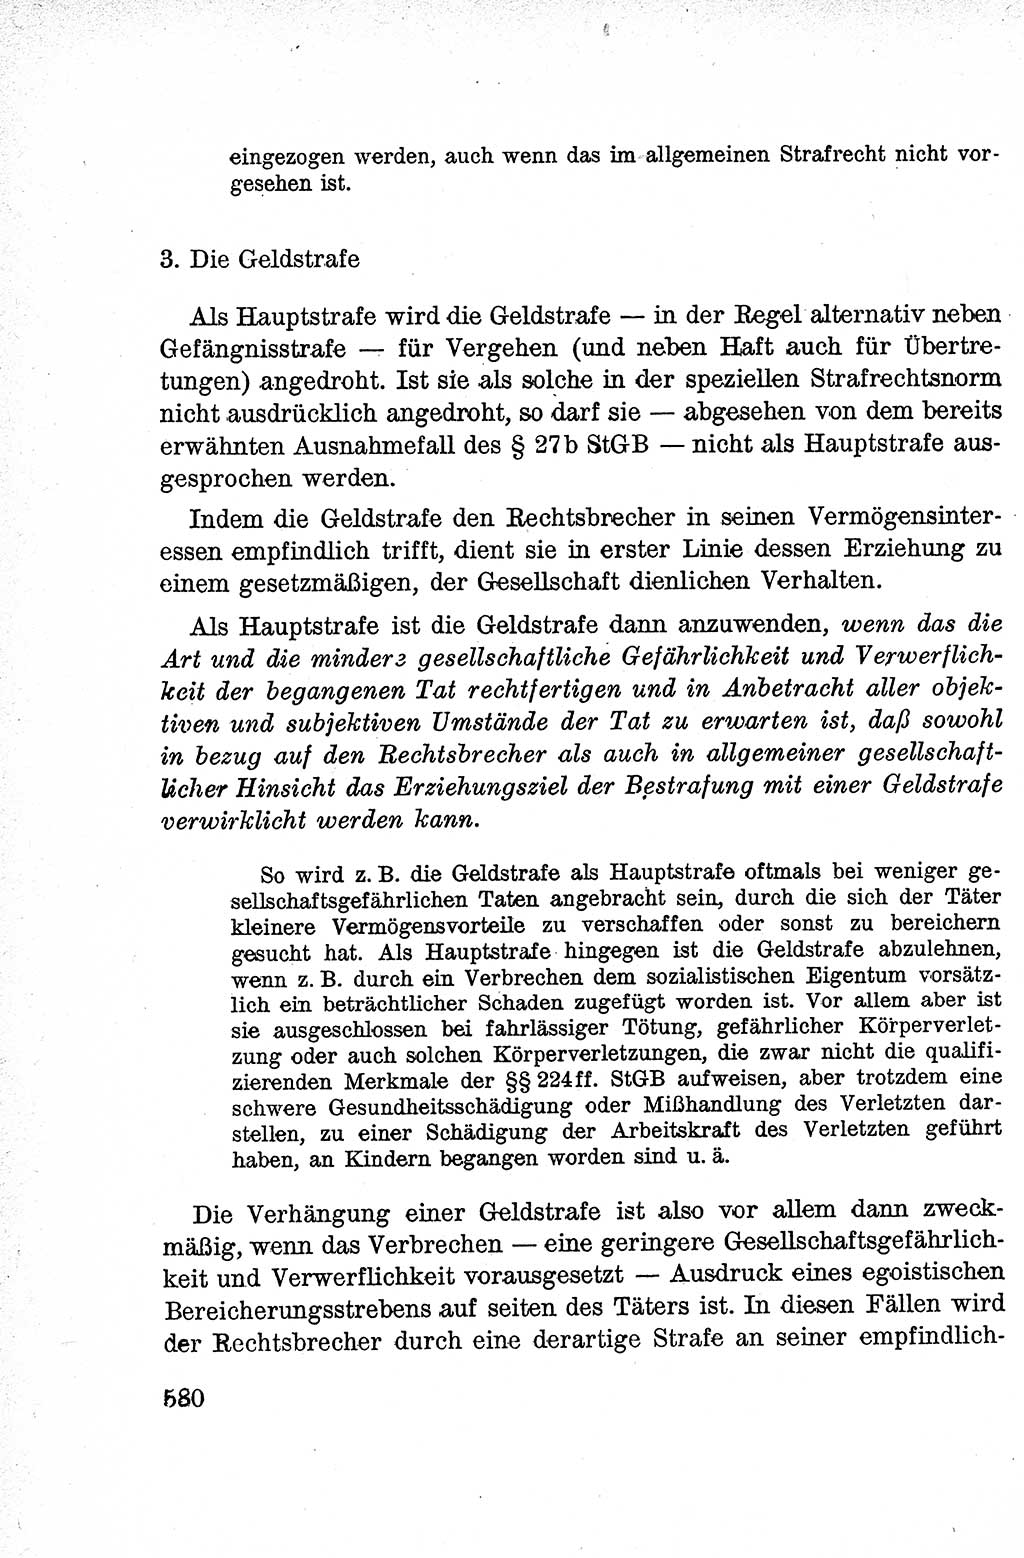 Lehrbuch des Strafrechts der Deutschen Demokratischen Republik (DDR), Allgemeiner Teil 1959, Seite 580 (Lb. Strafr. DDR AT 1959, S. 580)